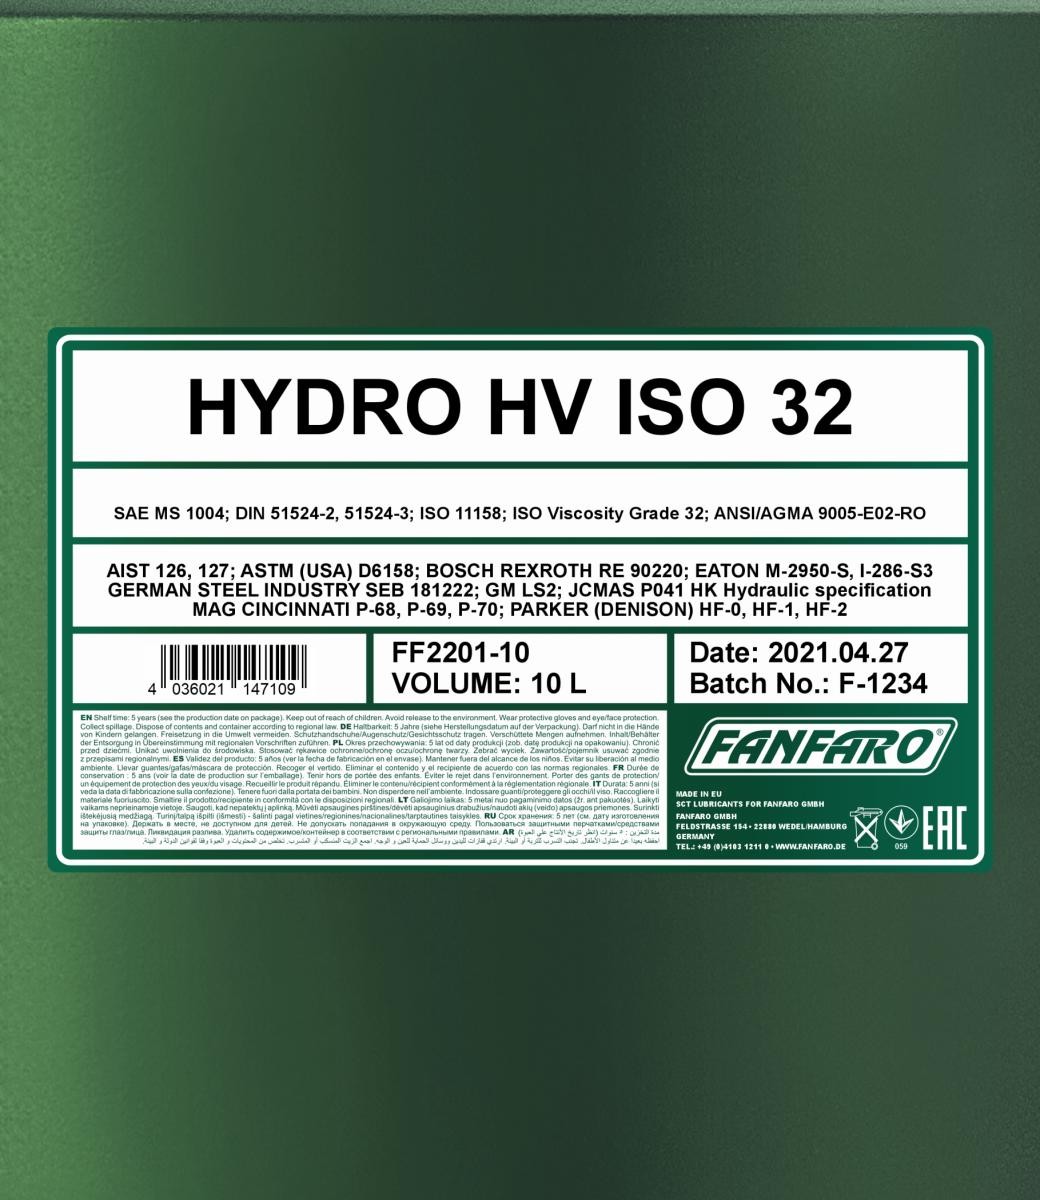 FANFARO Hydraulic fluid FF2201-10